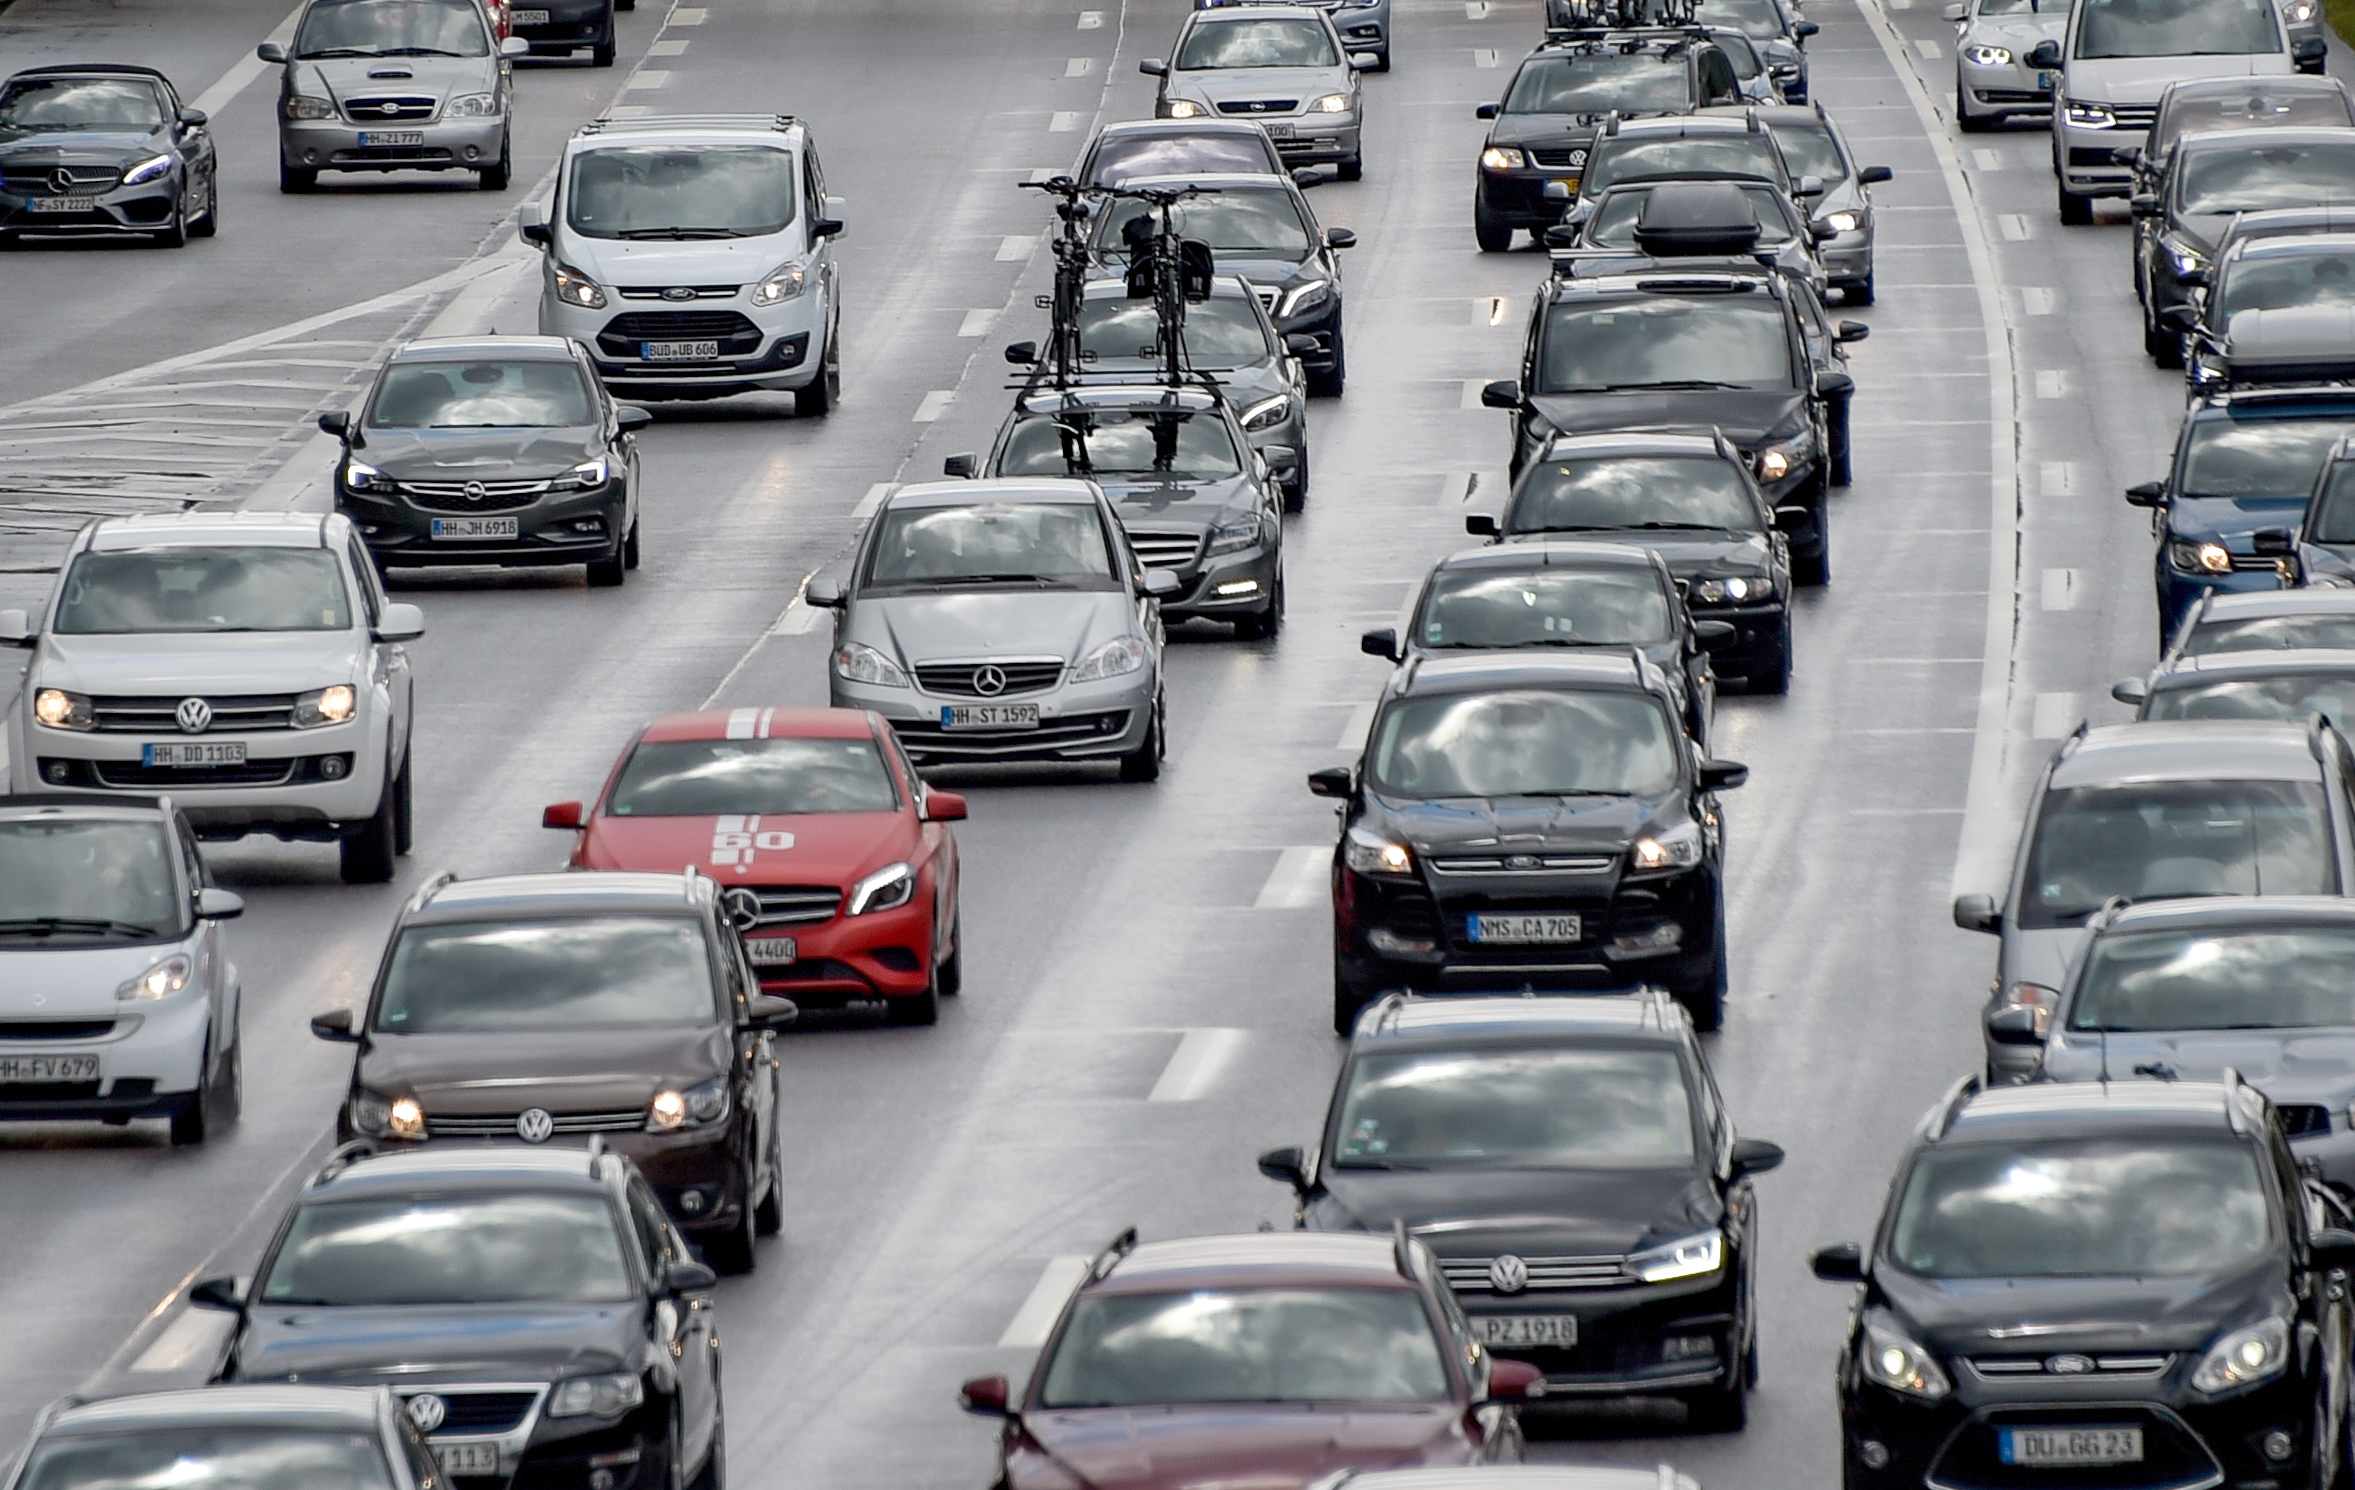 Pillanatokon belül átformálja az európai autóipart, ha komolyan veszik a párizsi klímaegyezményt